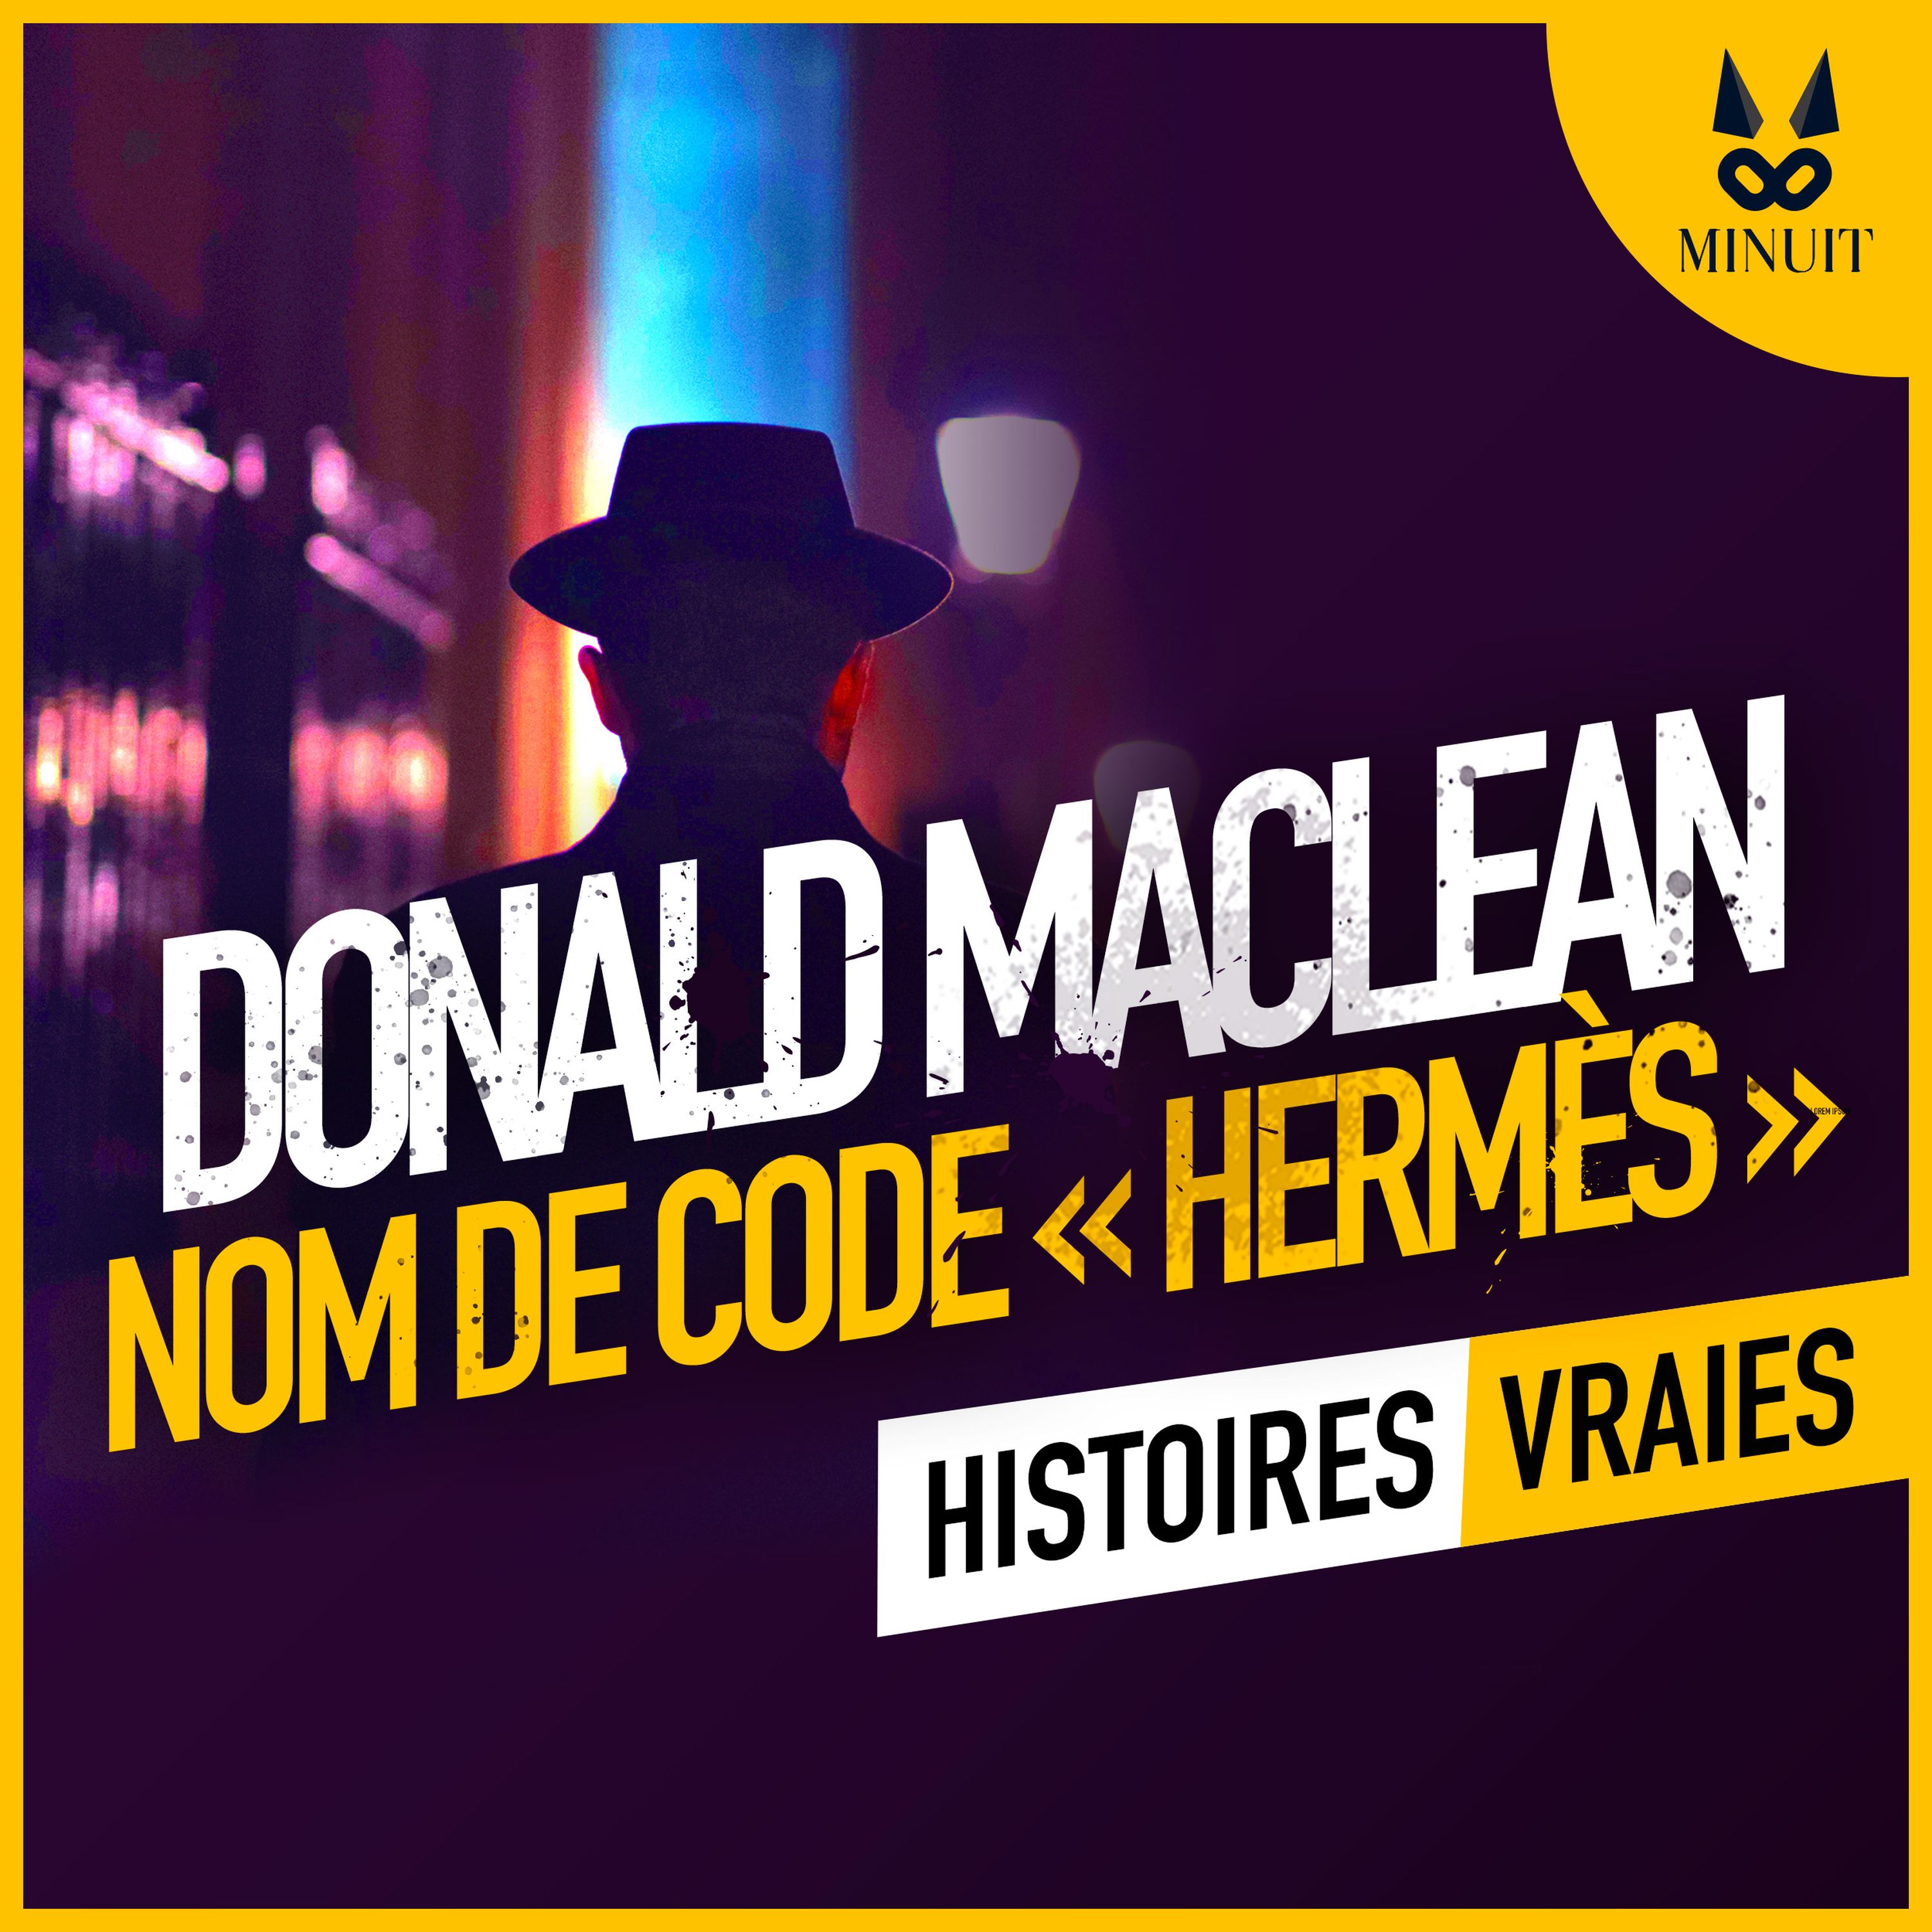 Donald Maclean : nom de code Hermès • Episode 3 sur 3